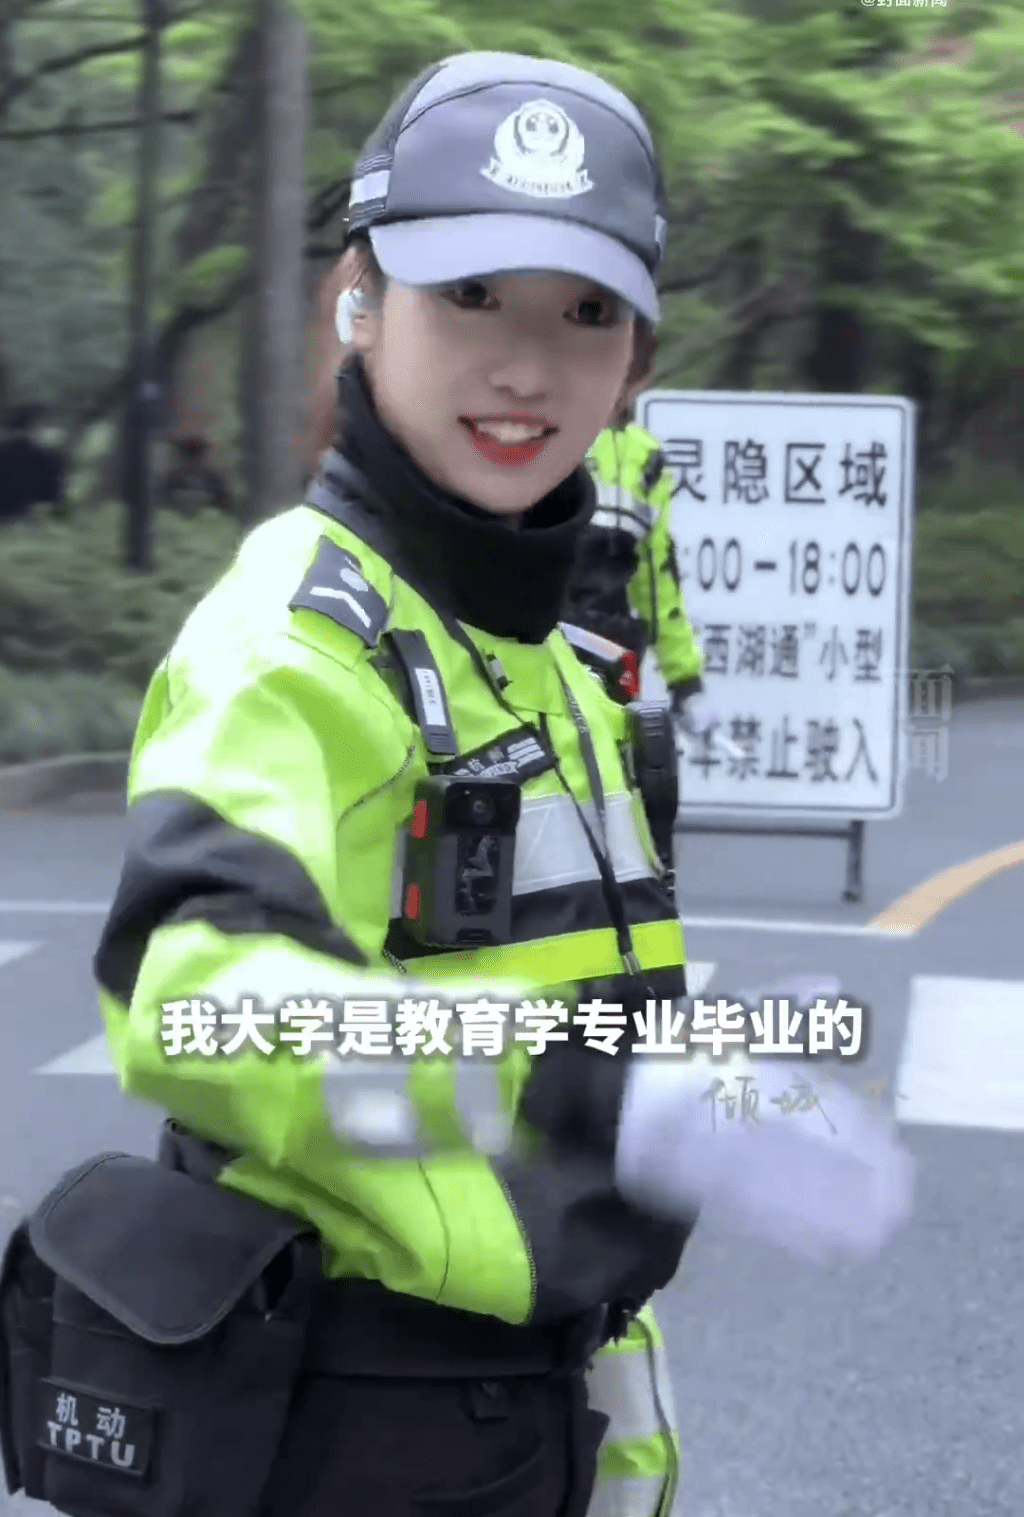 李语蔚执行交通疏导和劝导工作时，她以和蔼可亲的态度与民众沟通，使得路过的市民和游客感到温馨。